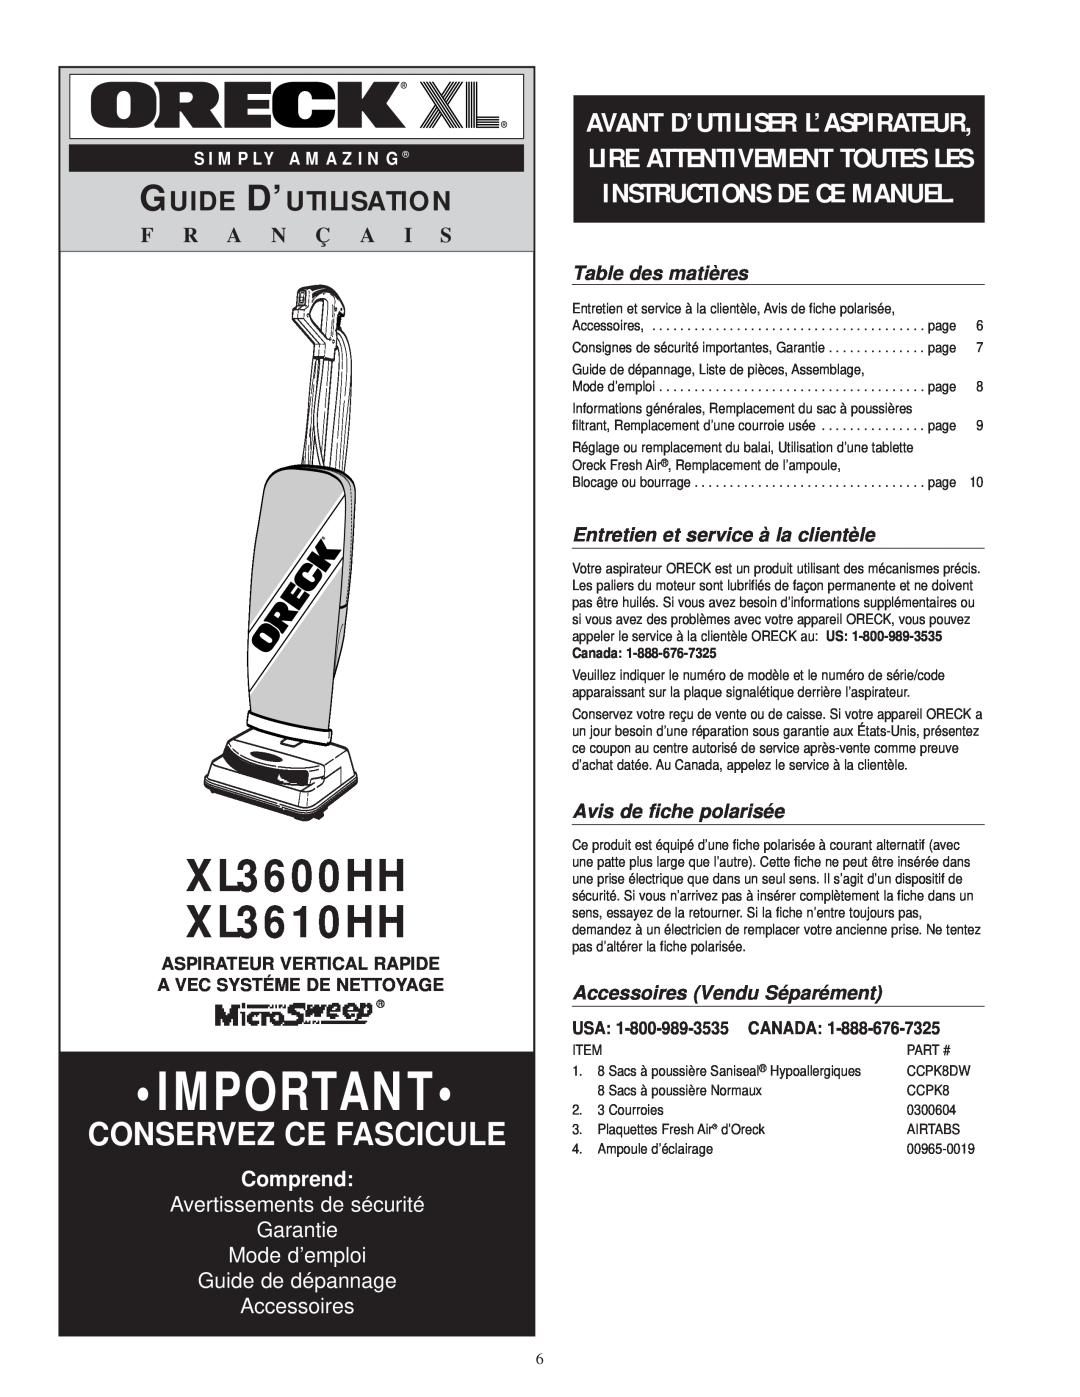 Oreck warranty XL3600HH XL3610HH, Guide D’Utilisation, F R A N Ç A I S, Comprend, Guide de dépannage Accessoires, Canada 